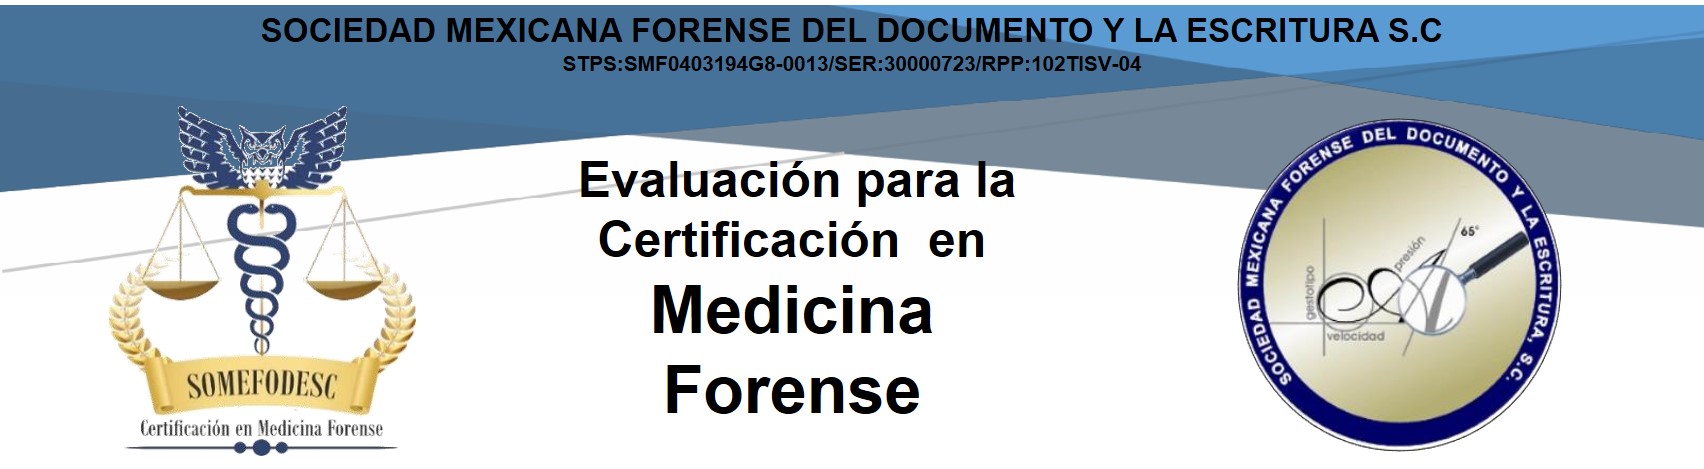 Evaluación para la Certificación Pericial en Medicina Forense